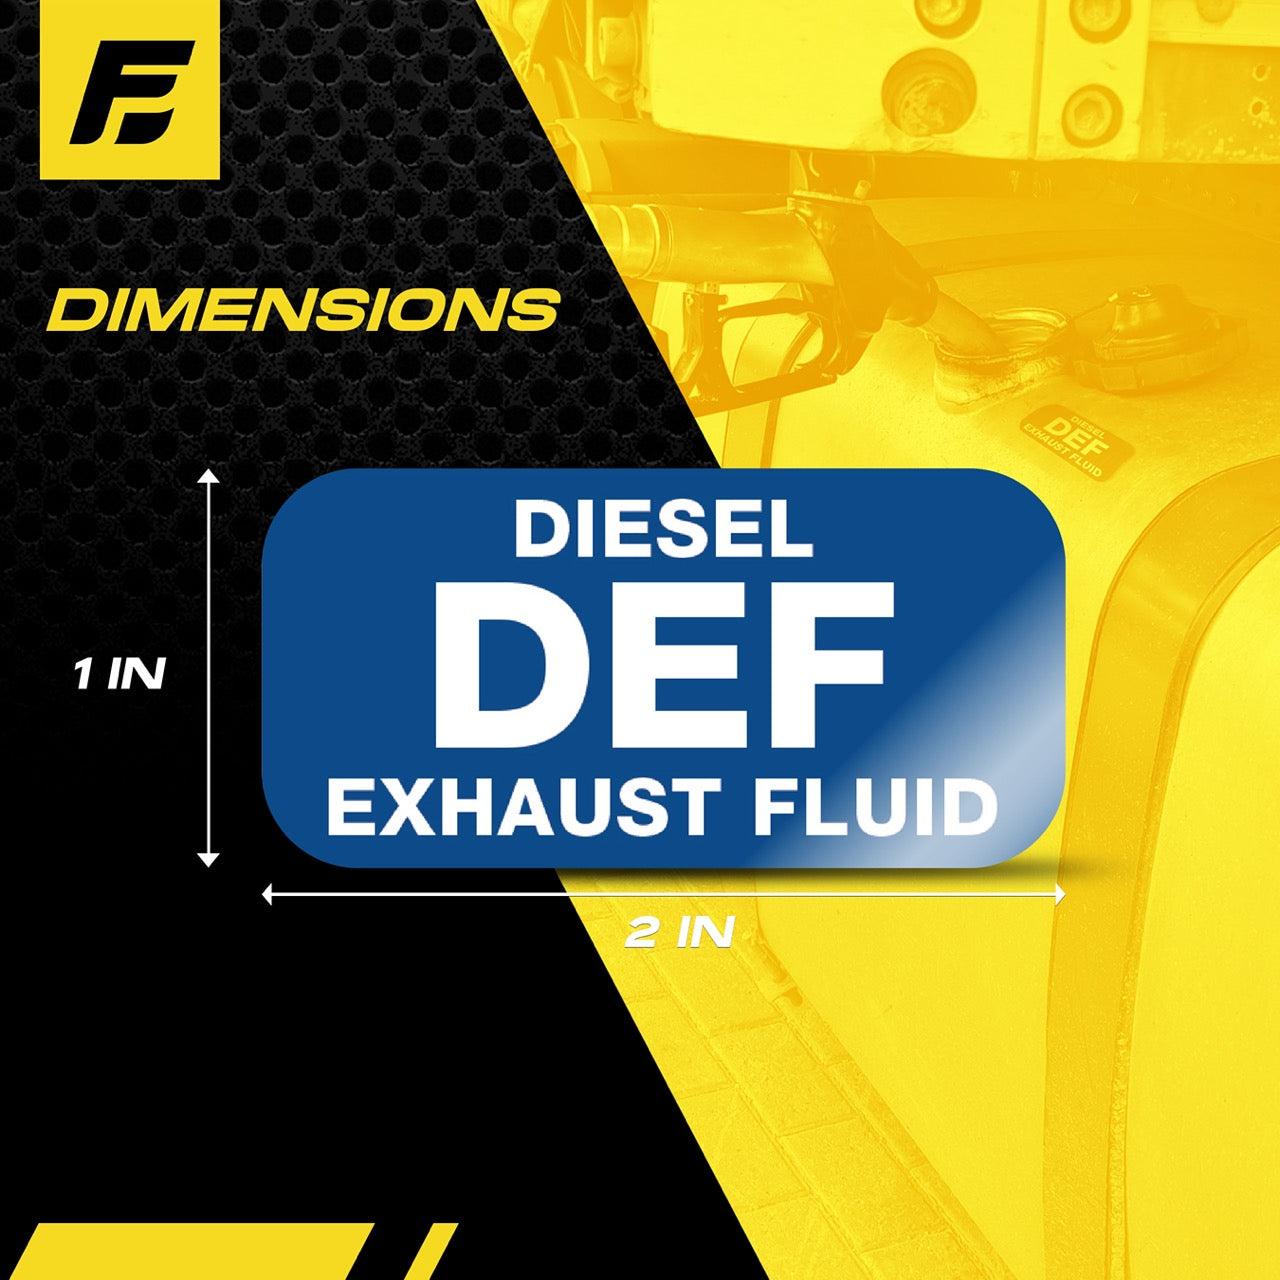 DEF Sticker - Diesel Exhaust Fluid Label | Size:  2"x1"